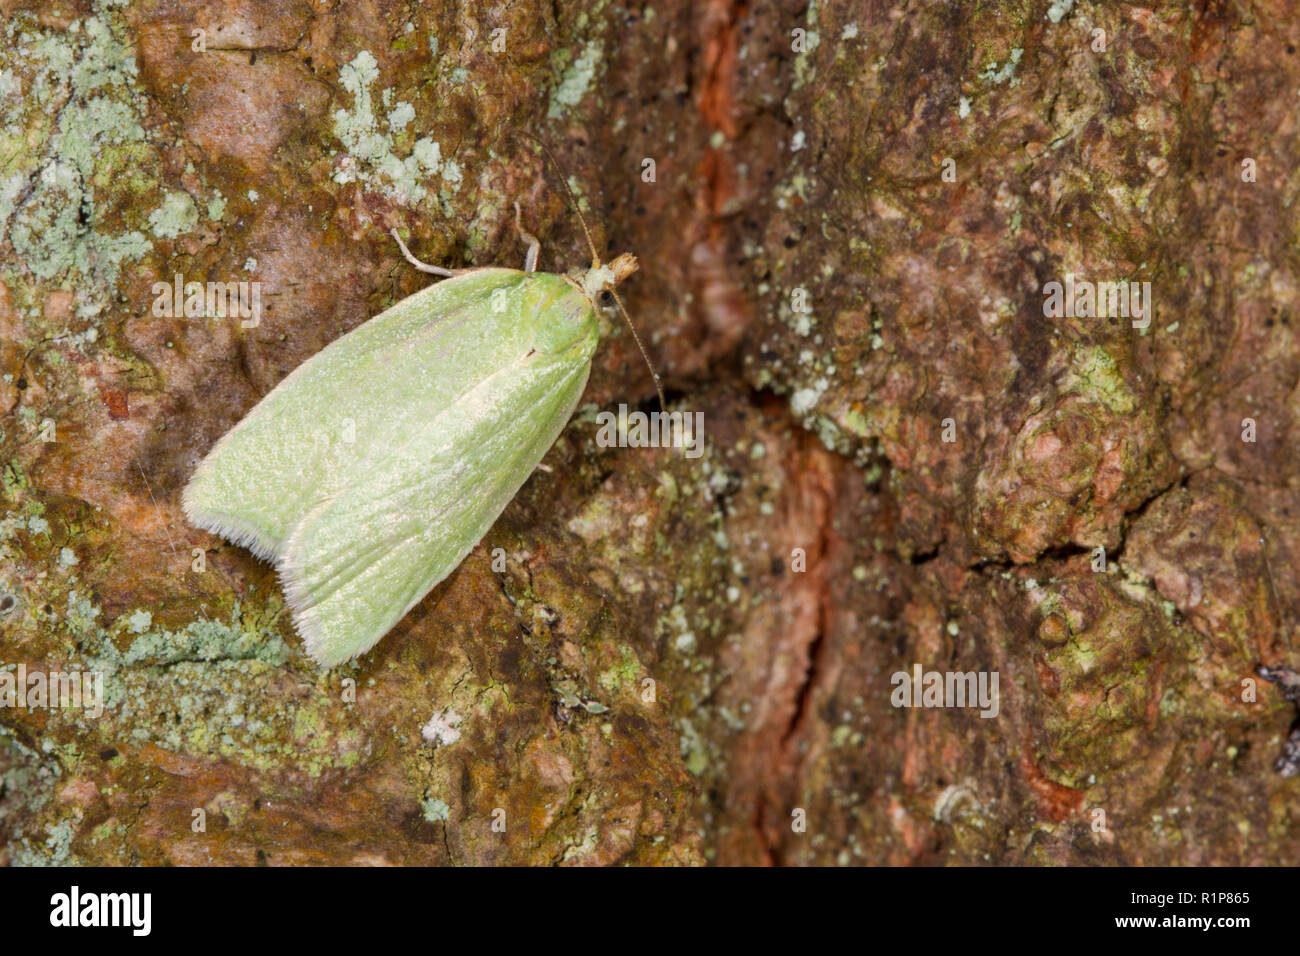 Tordeuse du chêne vert (Tortrix viridana) papillon adulte reposant sur l'écorce d'un arbre. Powys, Pays de Galles. Mai. Banque D'Images